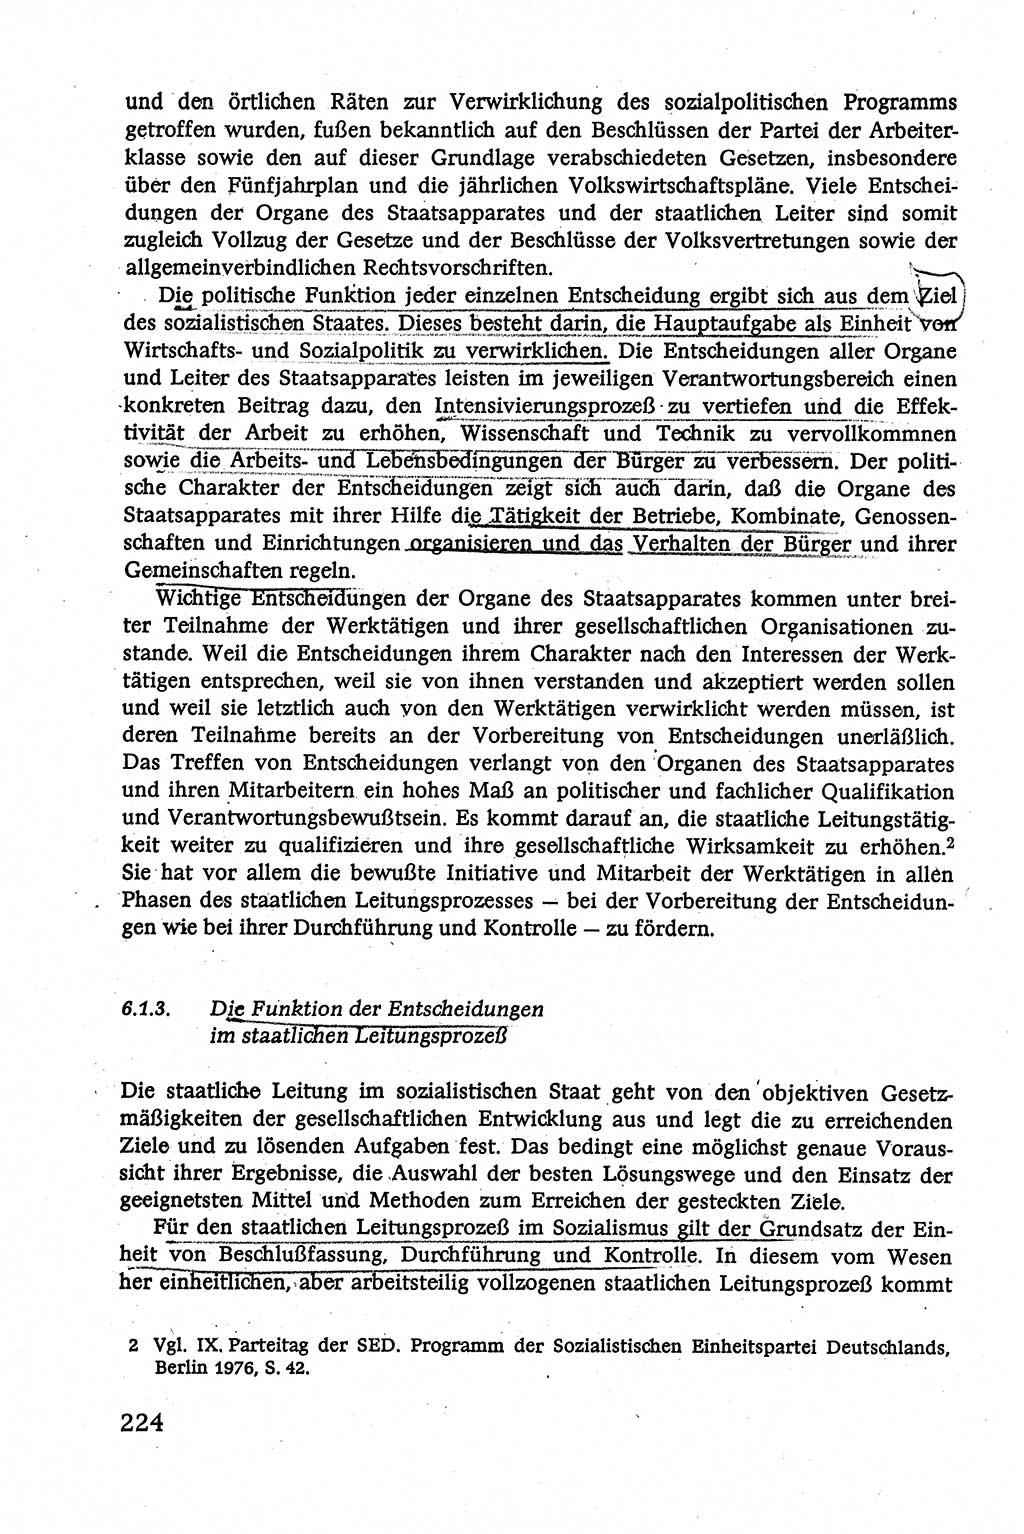 Verwaltungsrecht [Deutsche Demokratische Republik (DDR)], Lehrbuch 1979, Seite 224 (Verw.-R. DDR Lb. 1979, S. 224)